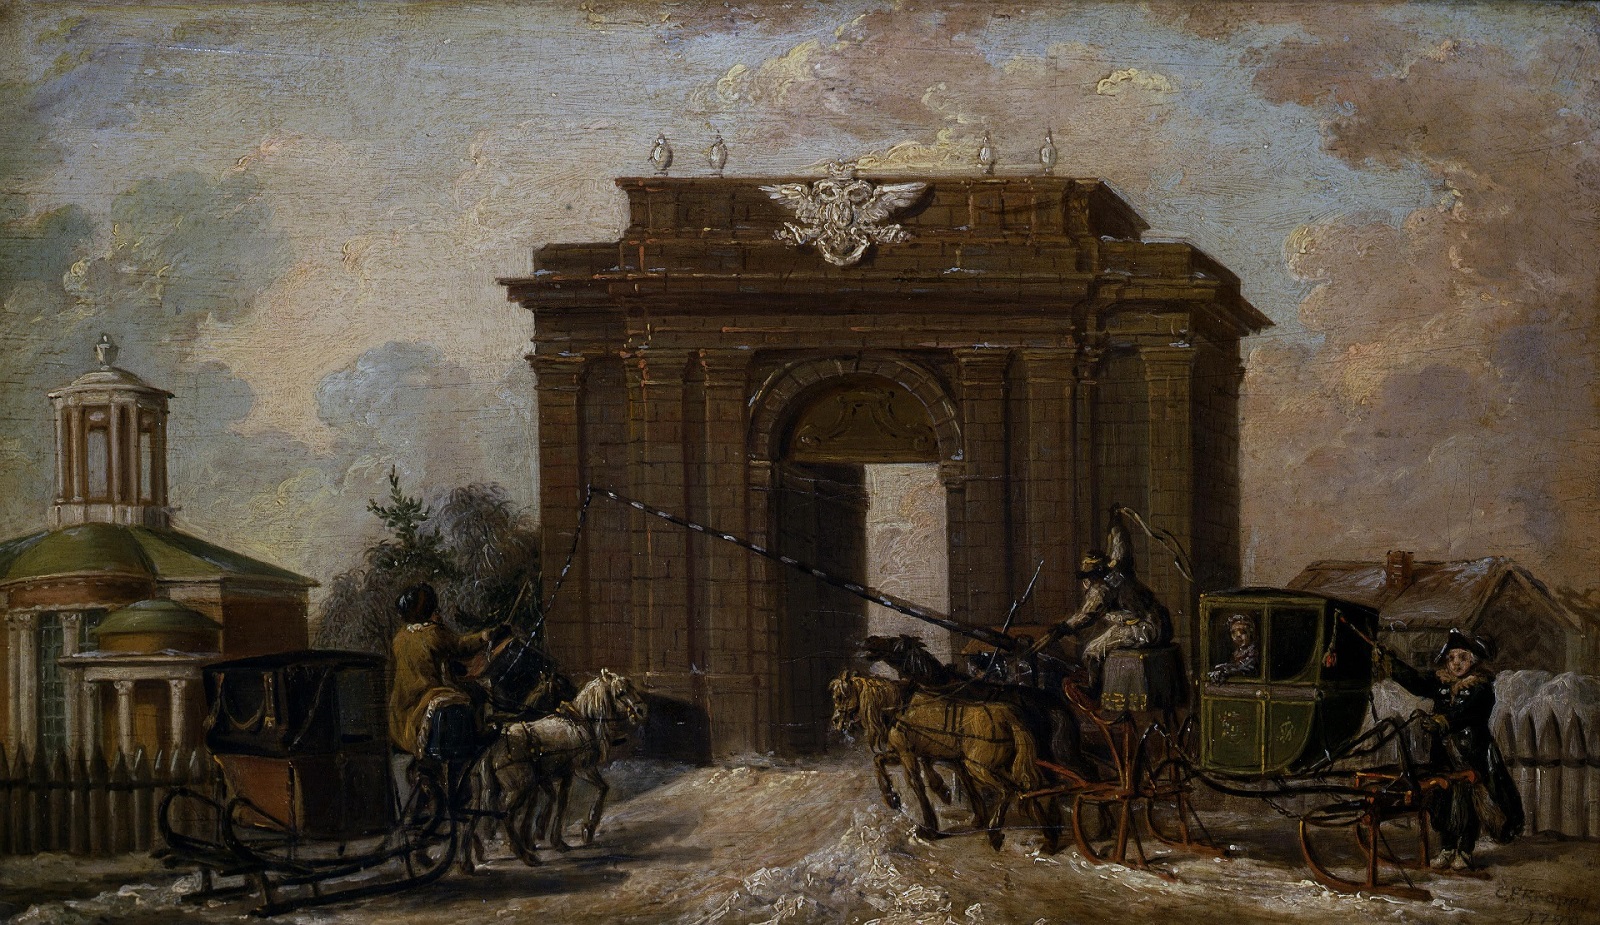 Екатерингофские ворота, построенные при Екатерине II.